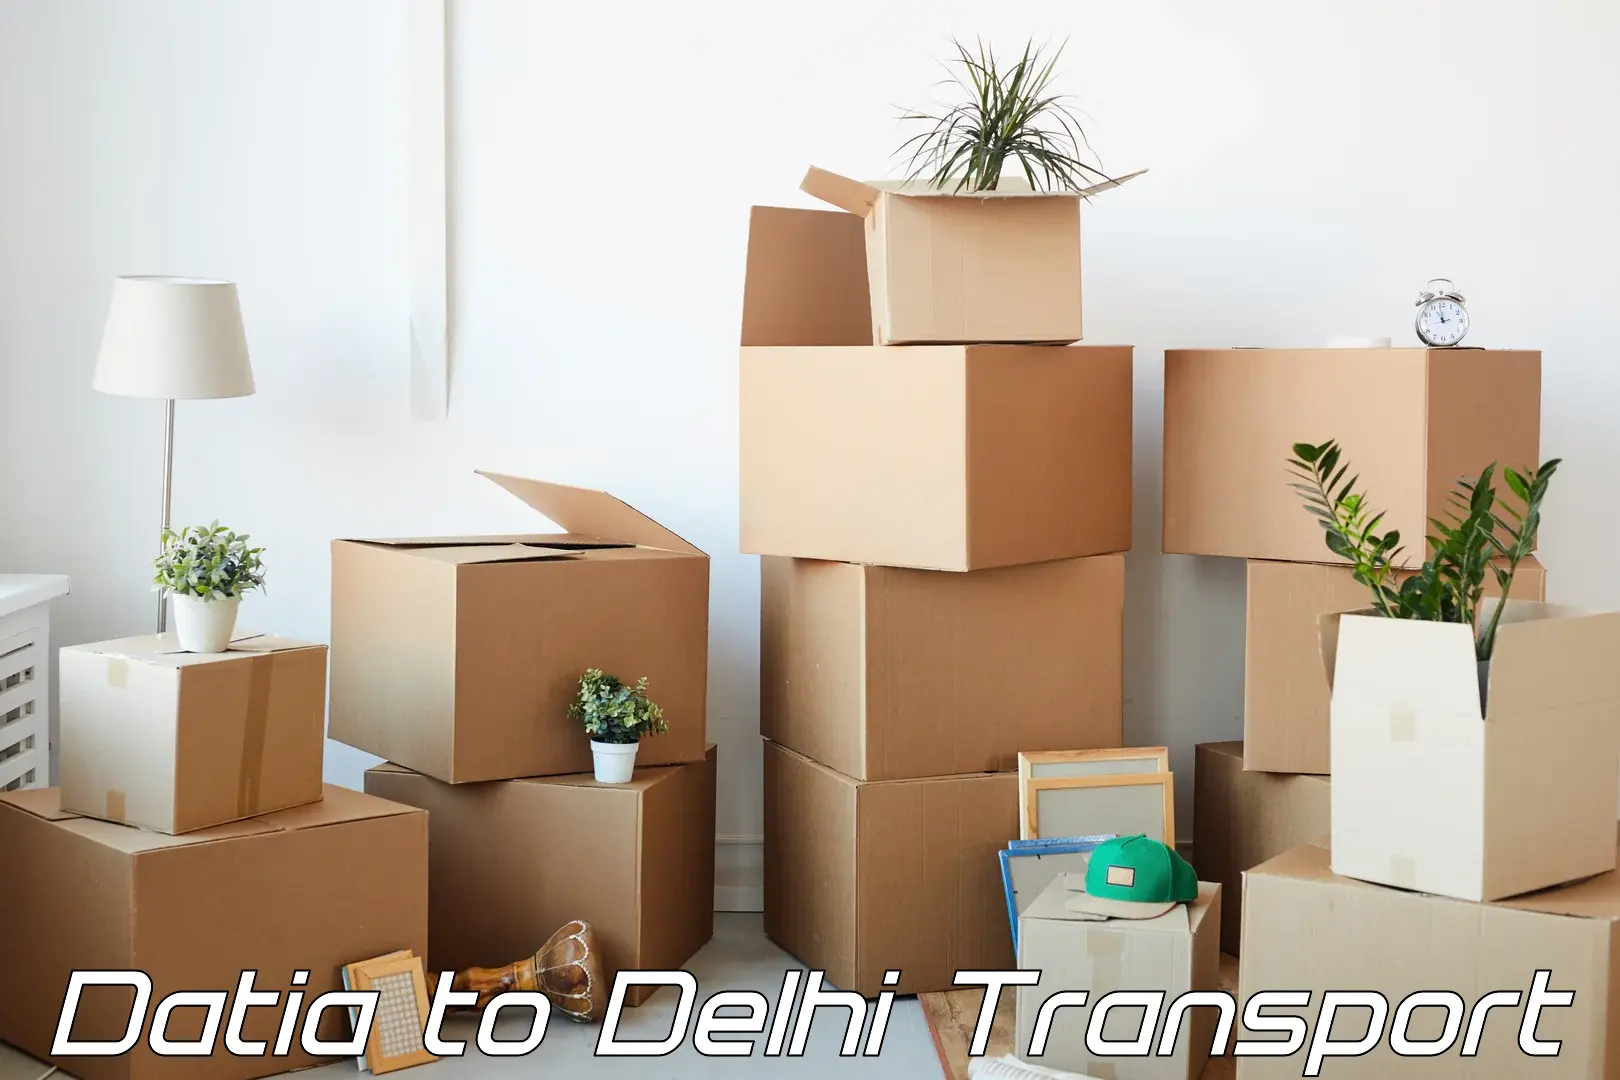 Nearby transport service Datia to Delhi